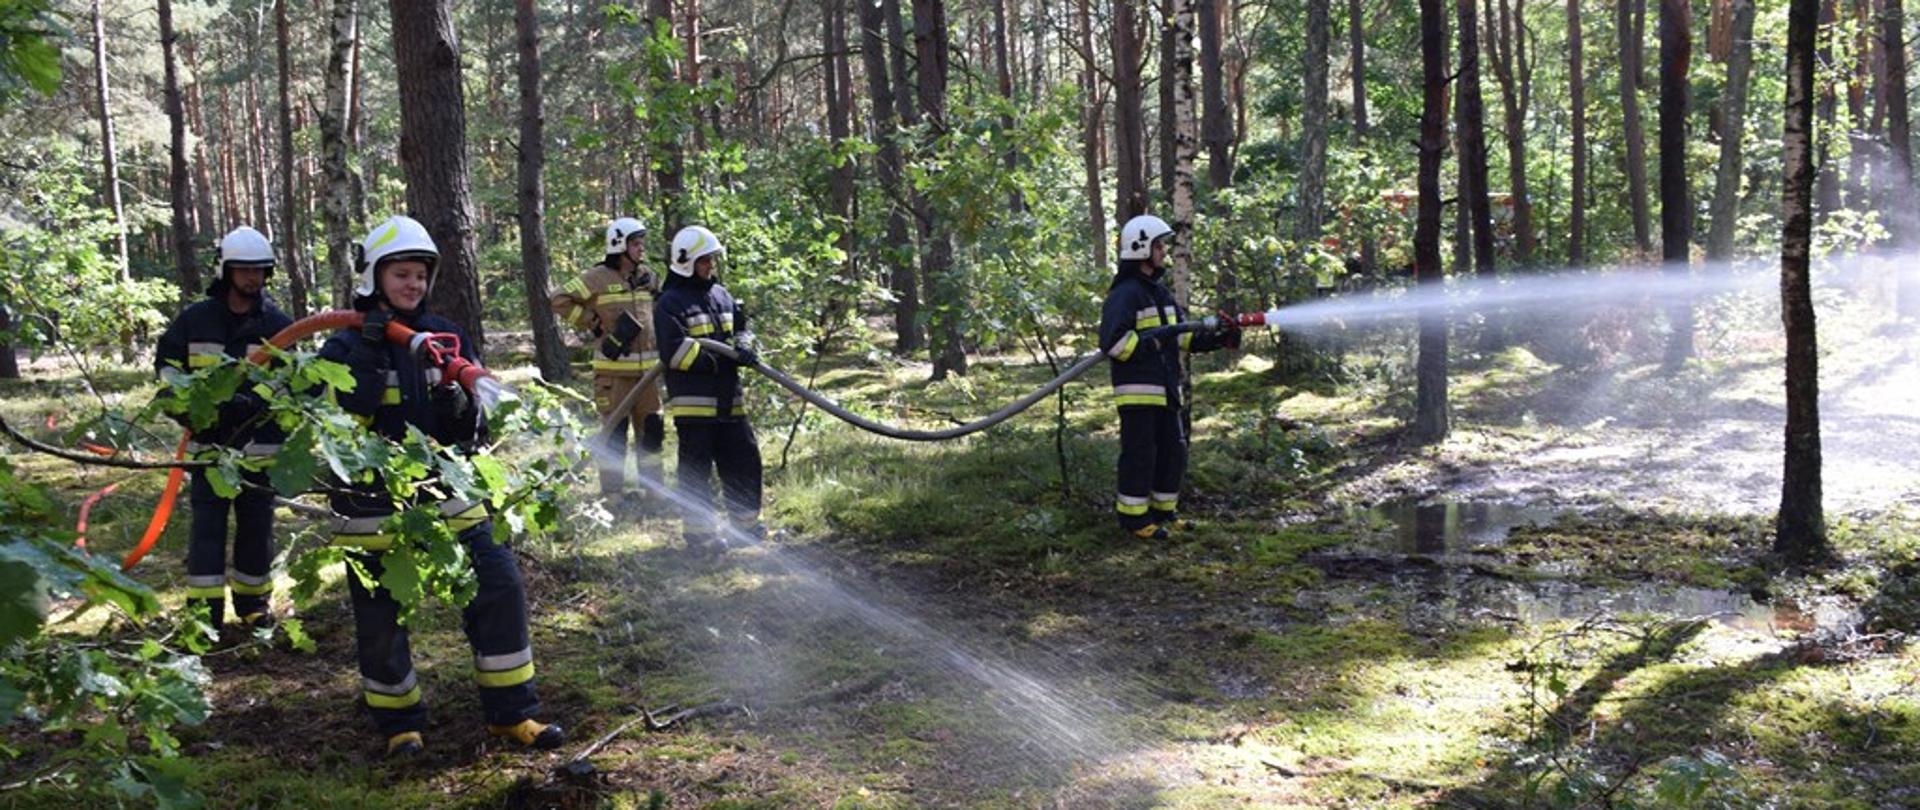 W lesie stoi pięcioro strażaków ubranych w ubrania specjalne. Dwie osoby trzymają prądownicę wodne i podają wodę. 